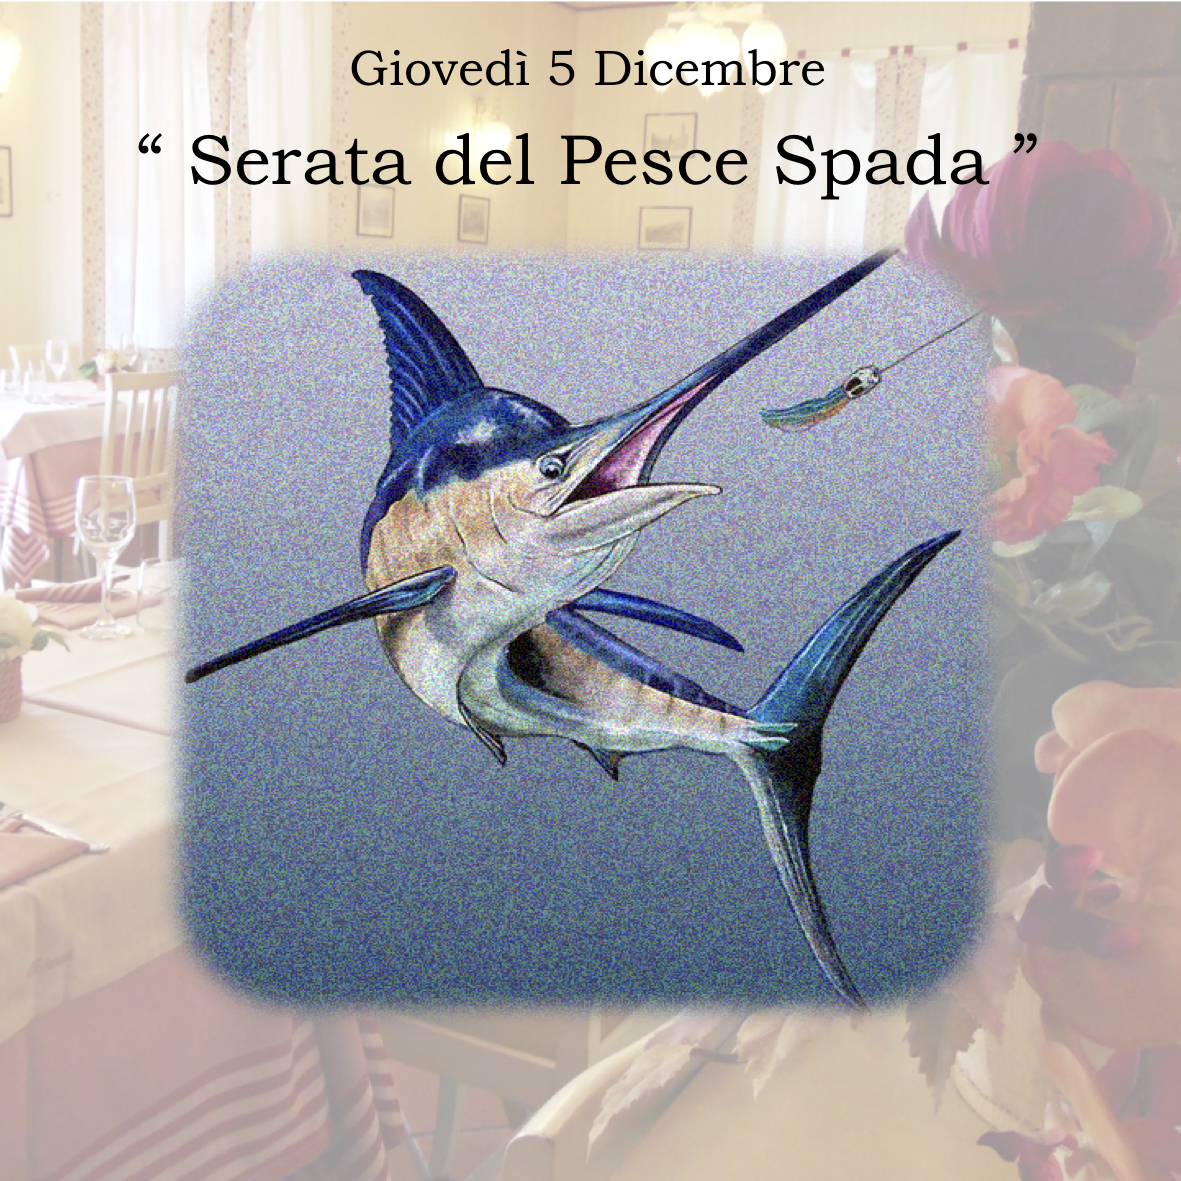 Giovedì 5 Dicembre – “Serata del Pesce Spada”